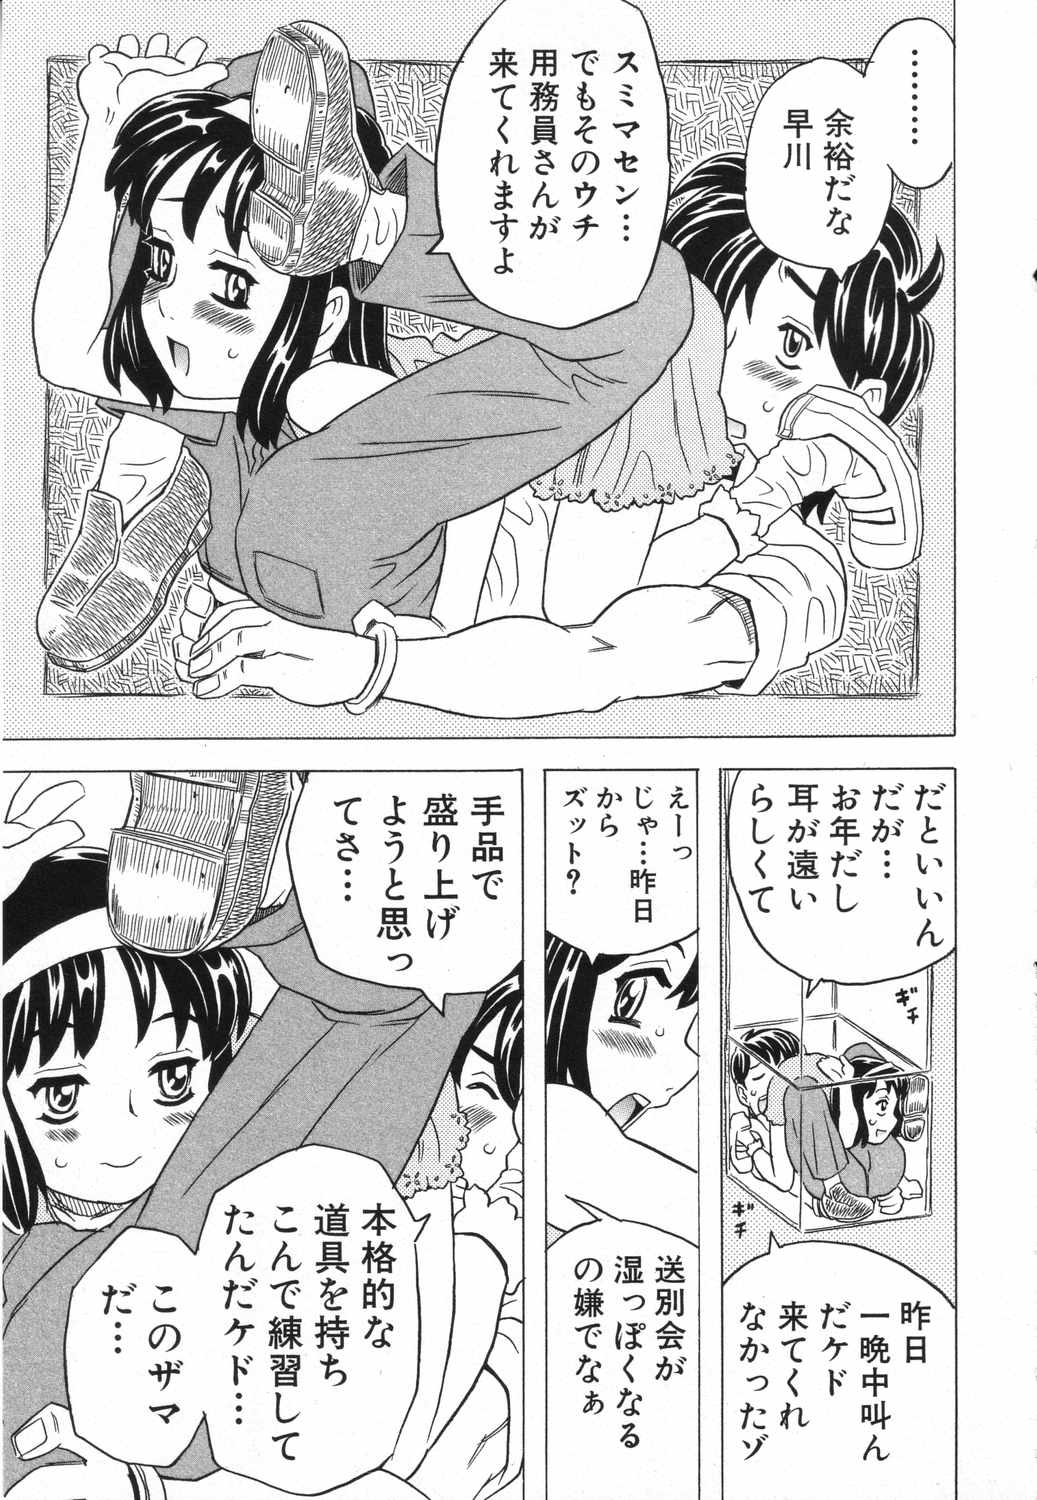 [Anthology] LOCO vol.5 Aki no Omorashi Musume Tokushuu page 12 full